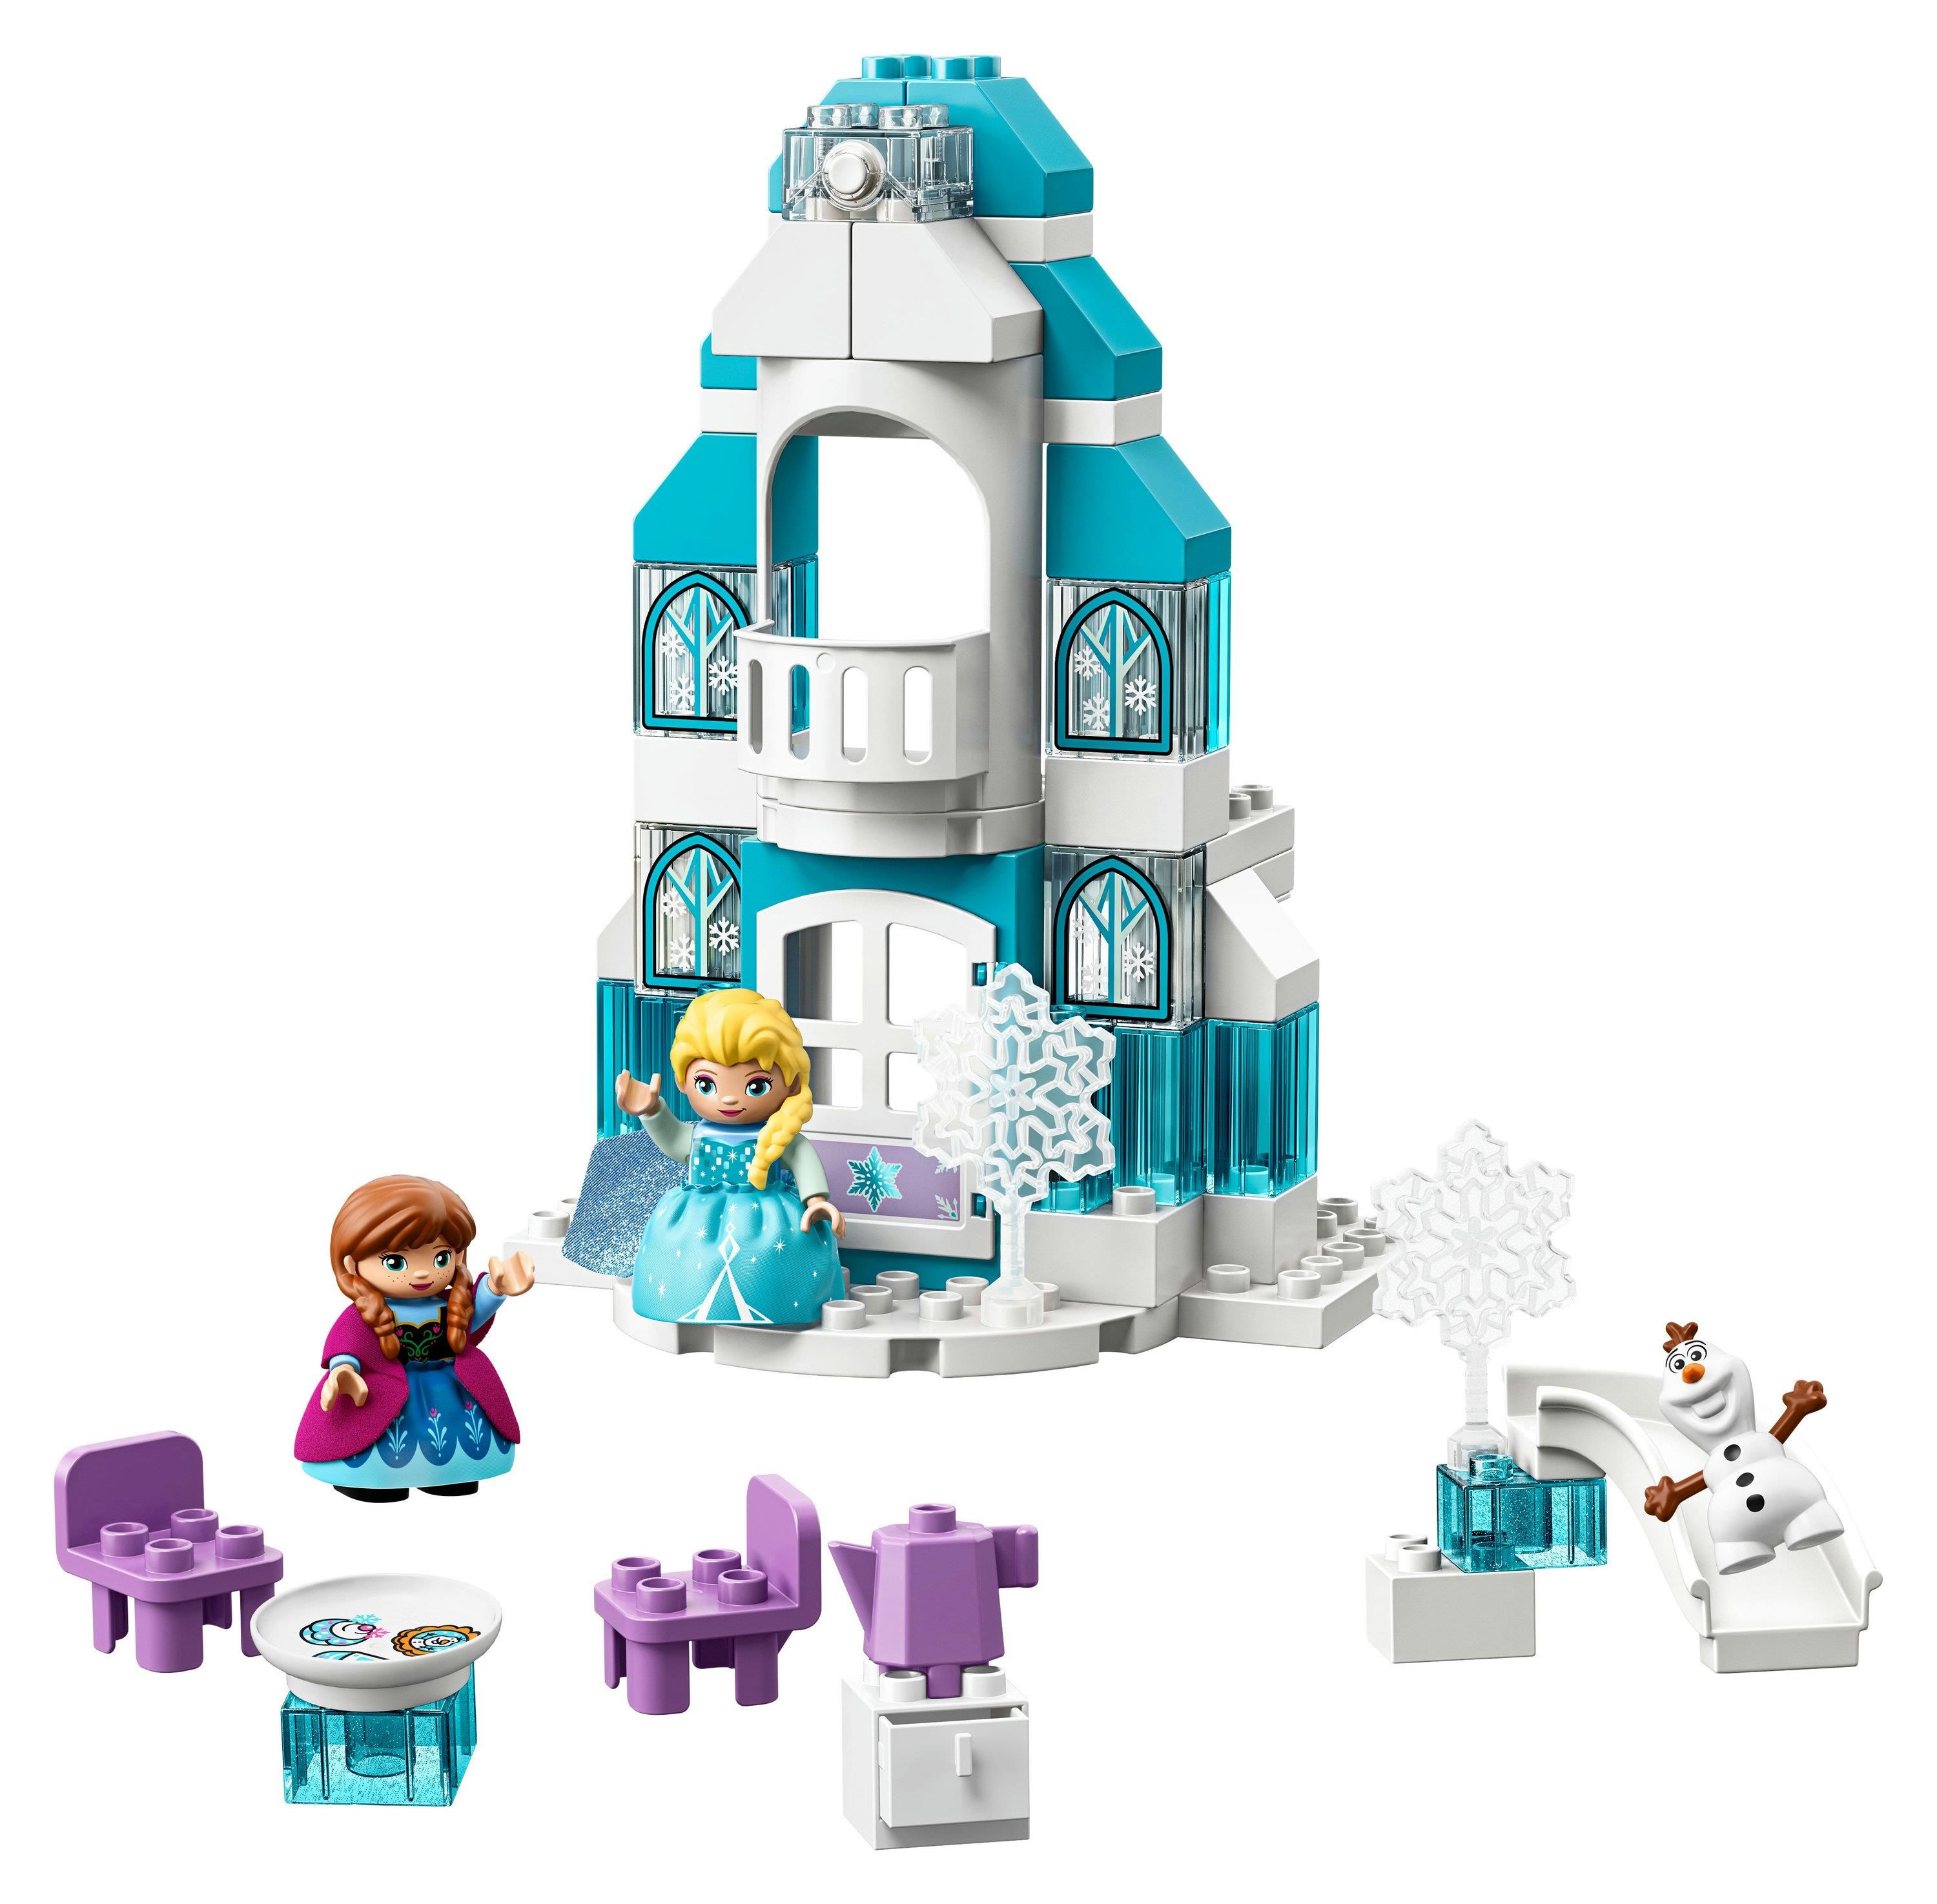 LEGO Duplo: Castello Di